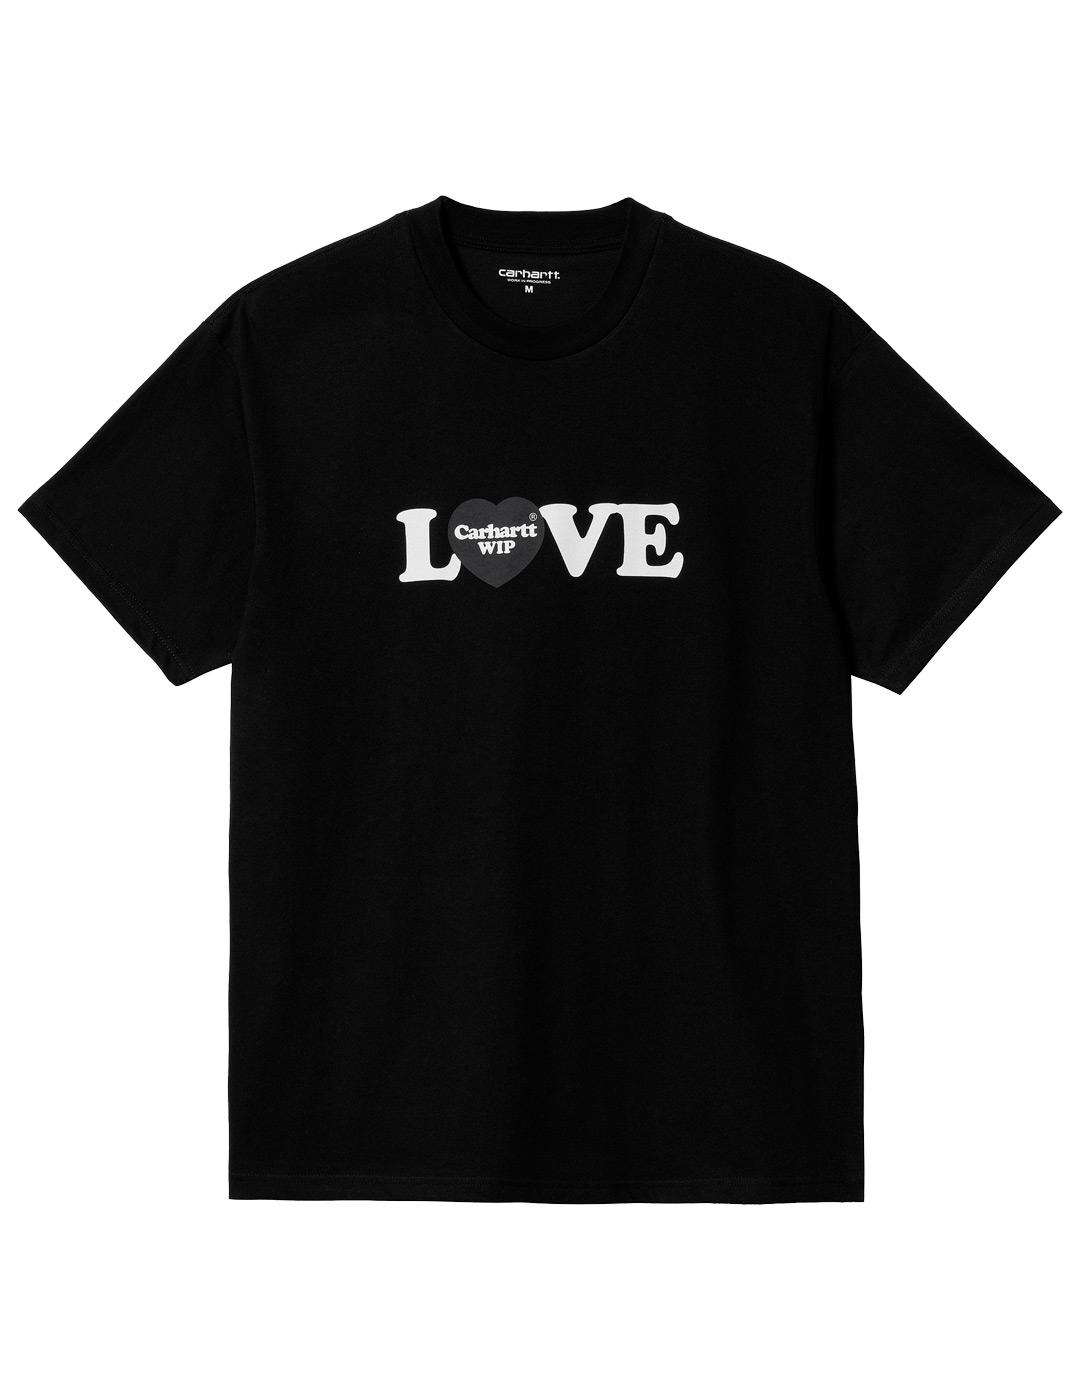 Camiseta Carhartt Wip Love Negro